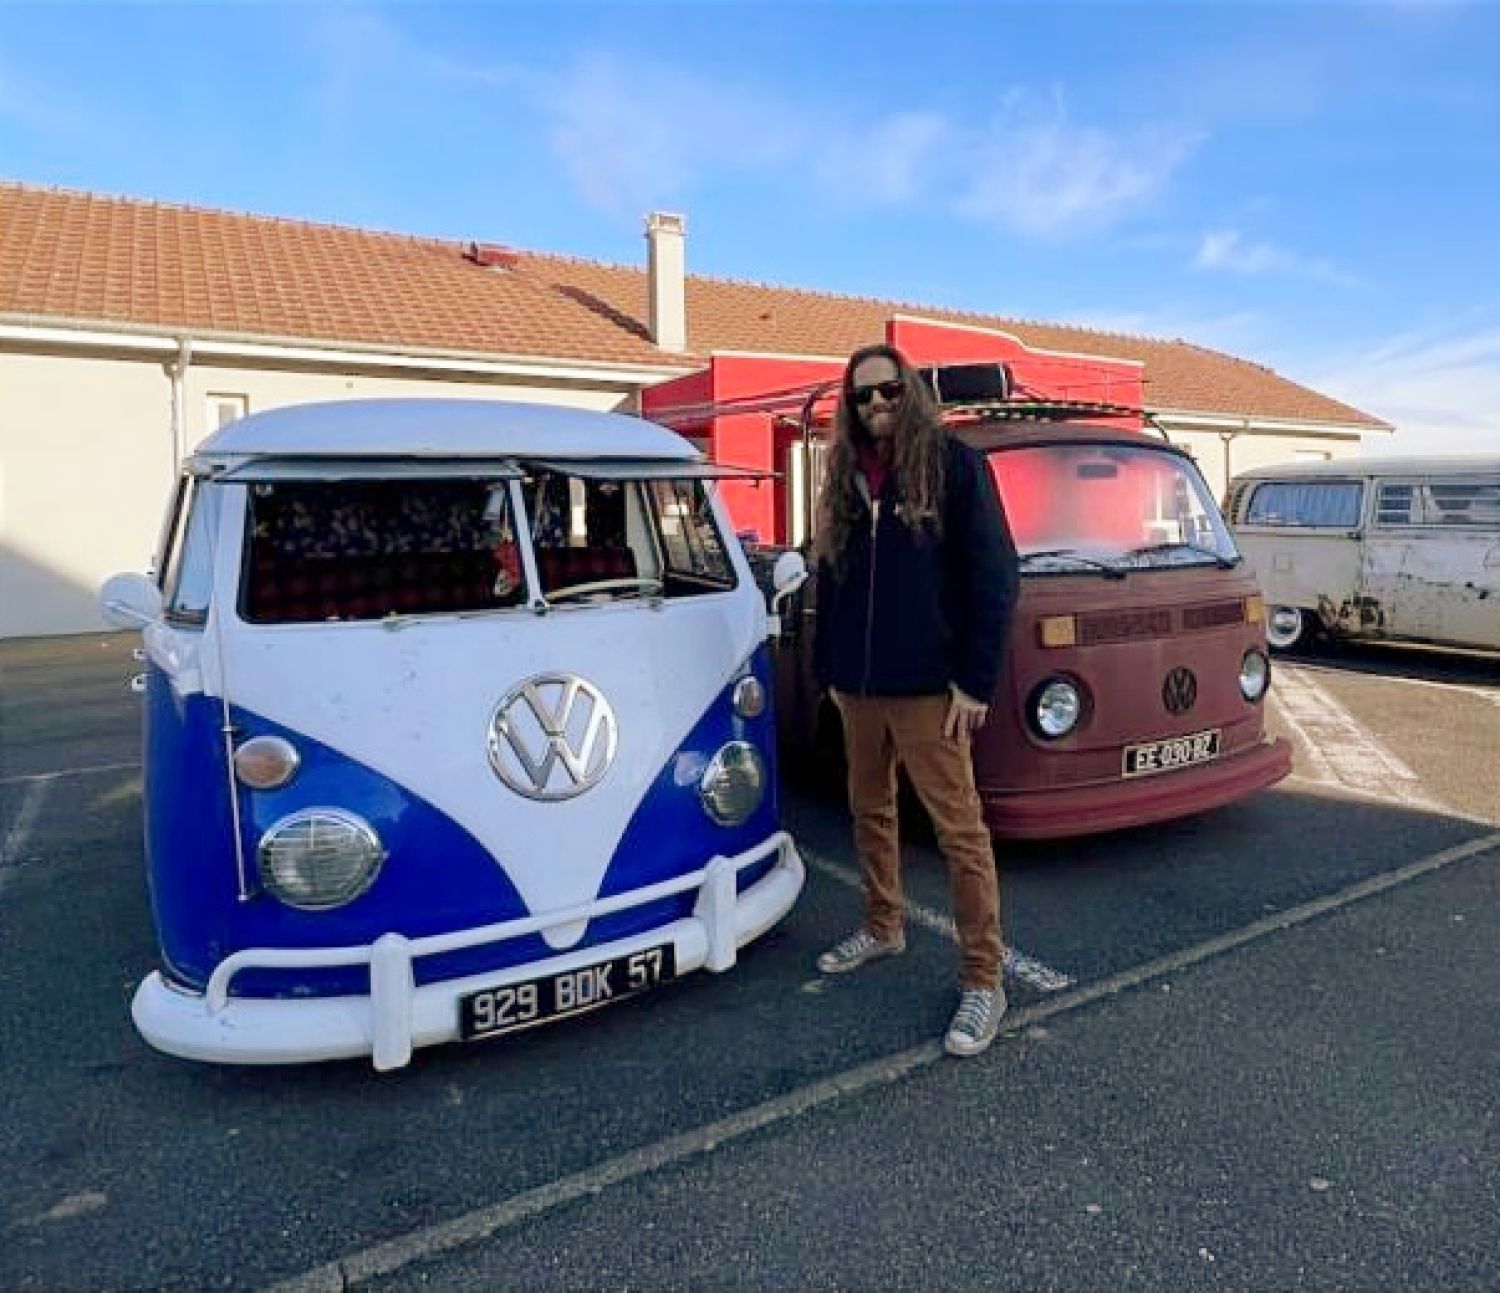 La passion de Nico et de l'association Kronenbus, c'est la préservation du patrimoine des anciennes Volkswagen